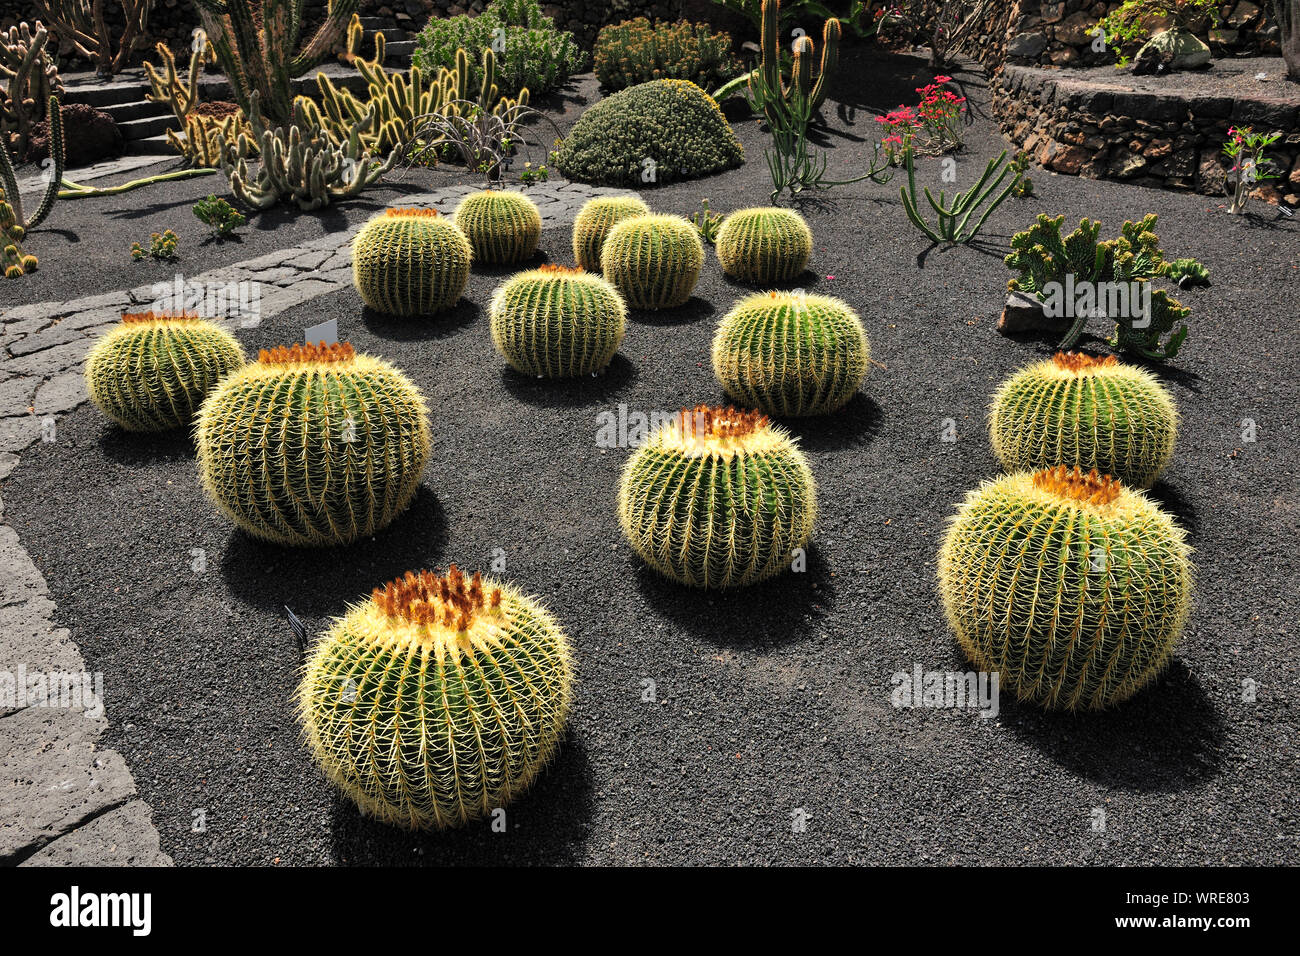 Jardin de Cactus (Cesar Manrique). Lanzarote, Canary islands. Spain Stock Photo